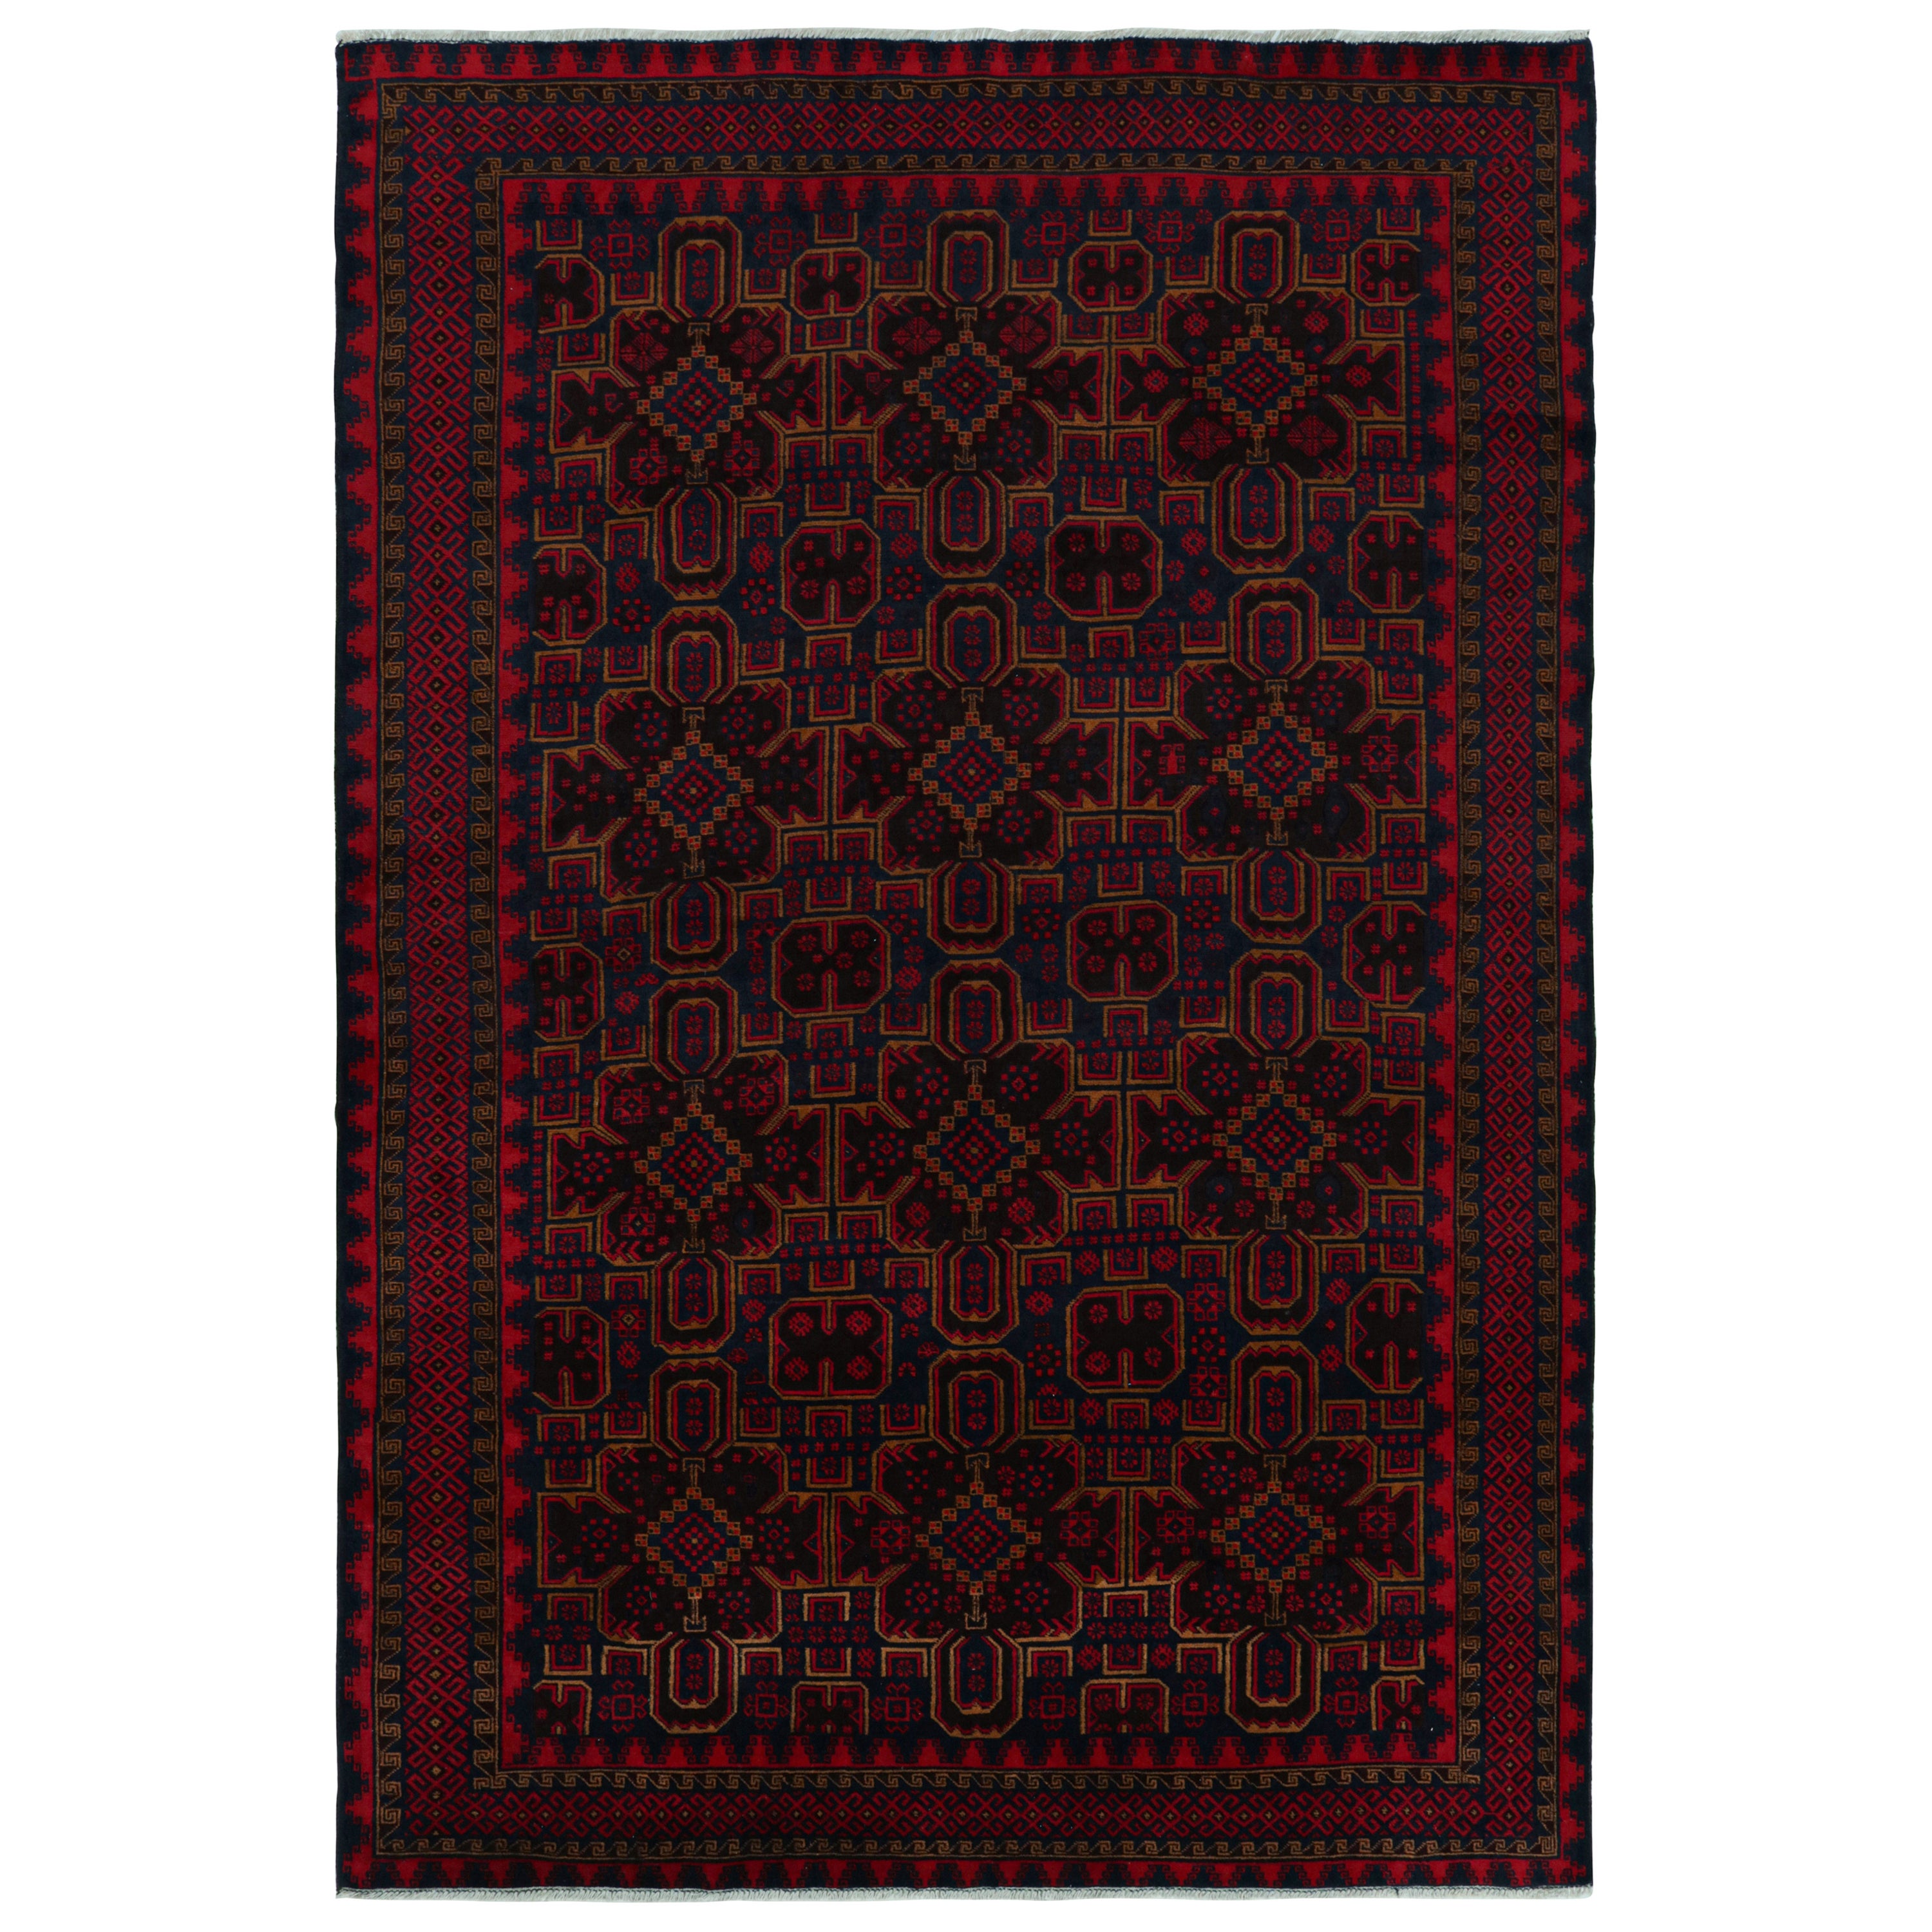 Rug & Kilim’s Mashwani Baluch Rug in Red and Blue Geometric Patterns